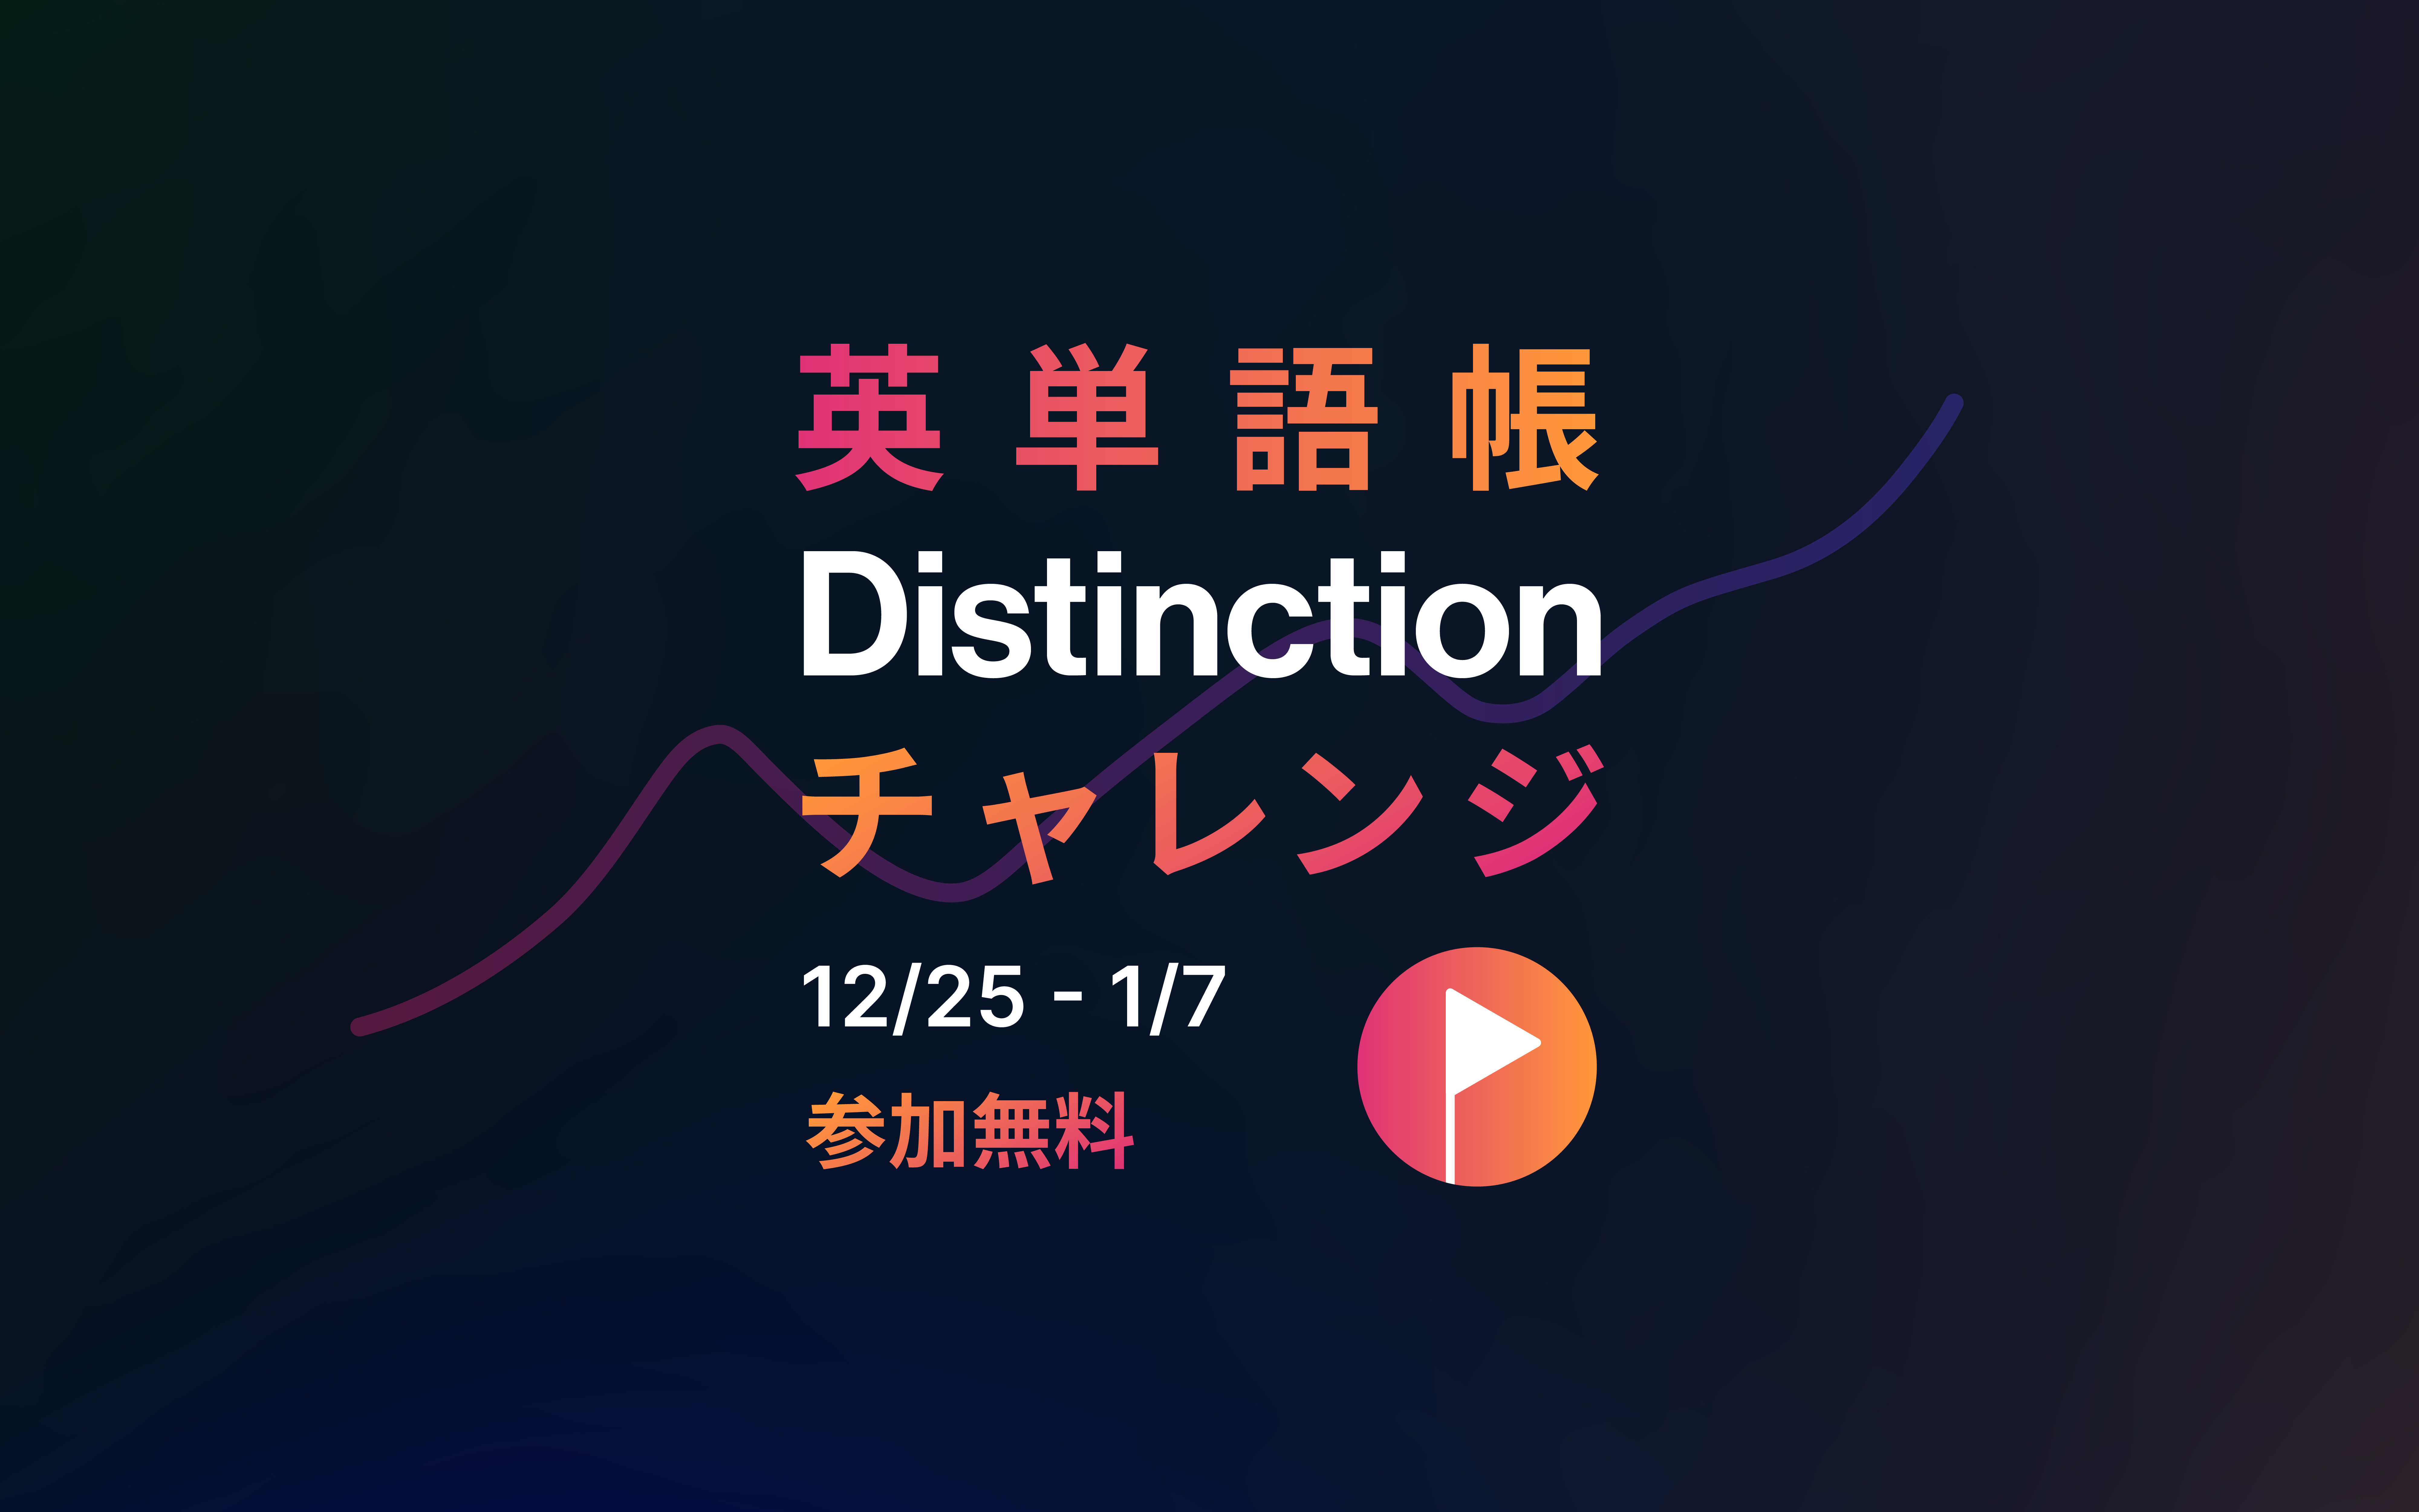 第3弾 英単語帳 Distinction チャレンジ 無料 開催決定 12月25日 土 1月7日 金